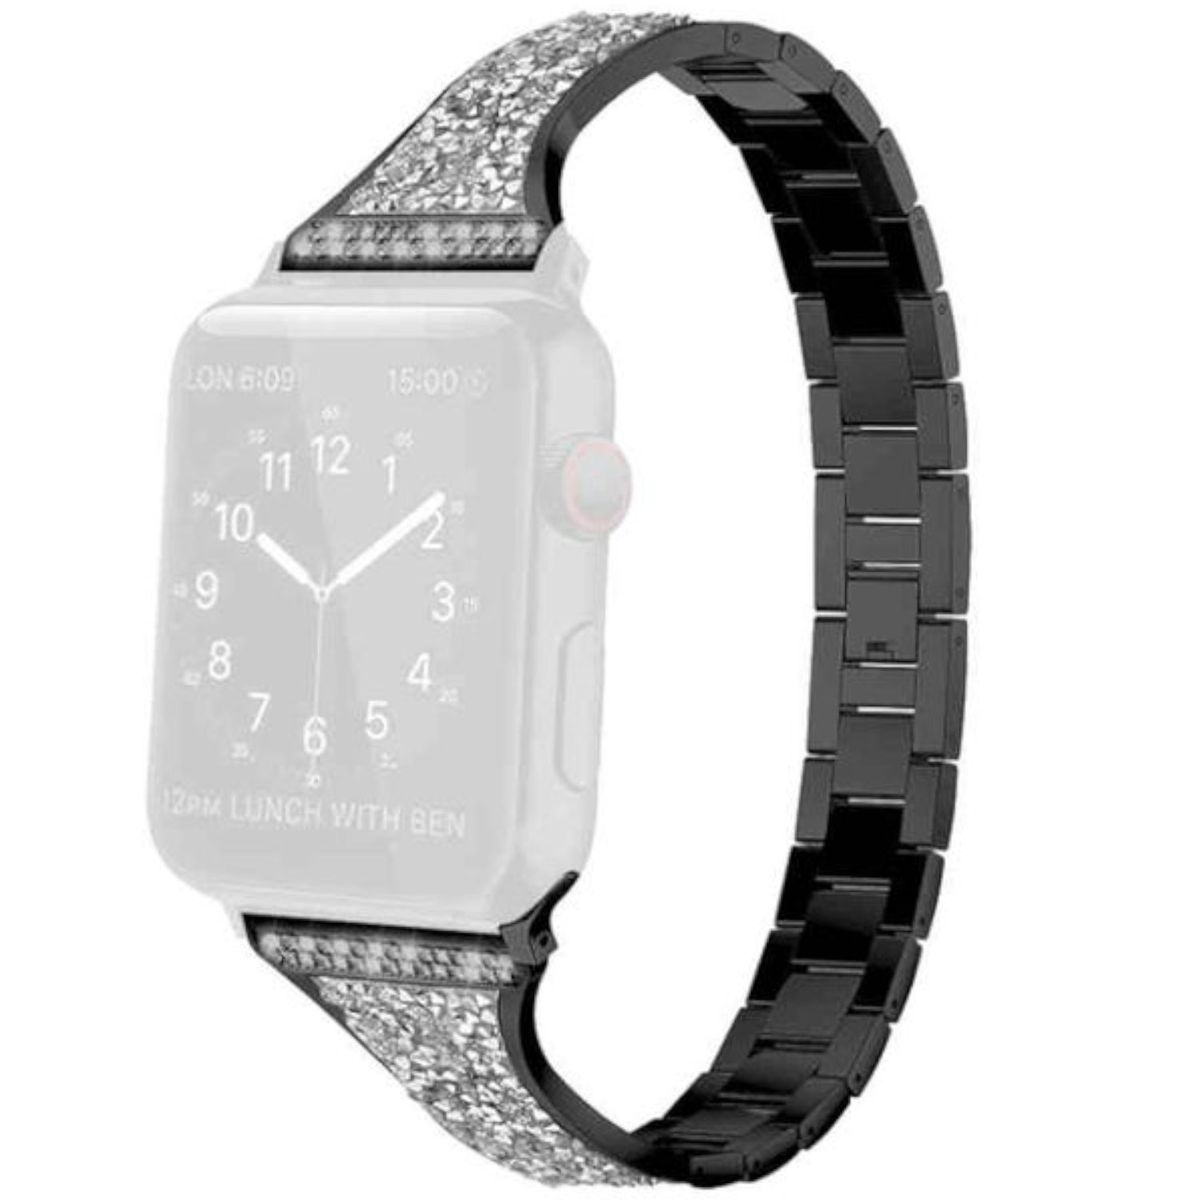 / Schwarz Apple, WIGENTO 3 7 Series Watch Ersatzarmband, 38mm, 5 Stahl Design / 4 Band, 8 2 41 9 6 Style SE 1 40 Diamant